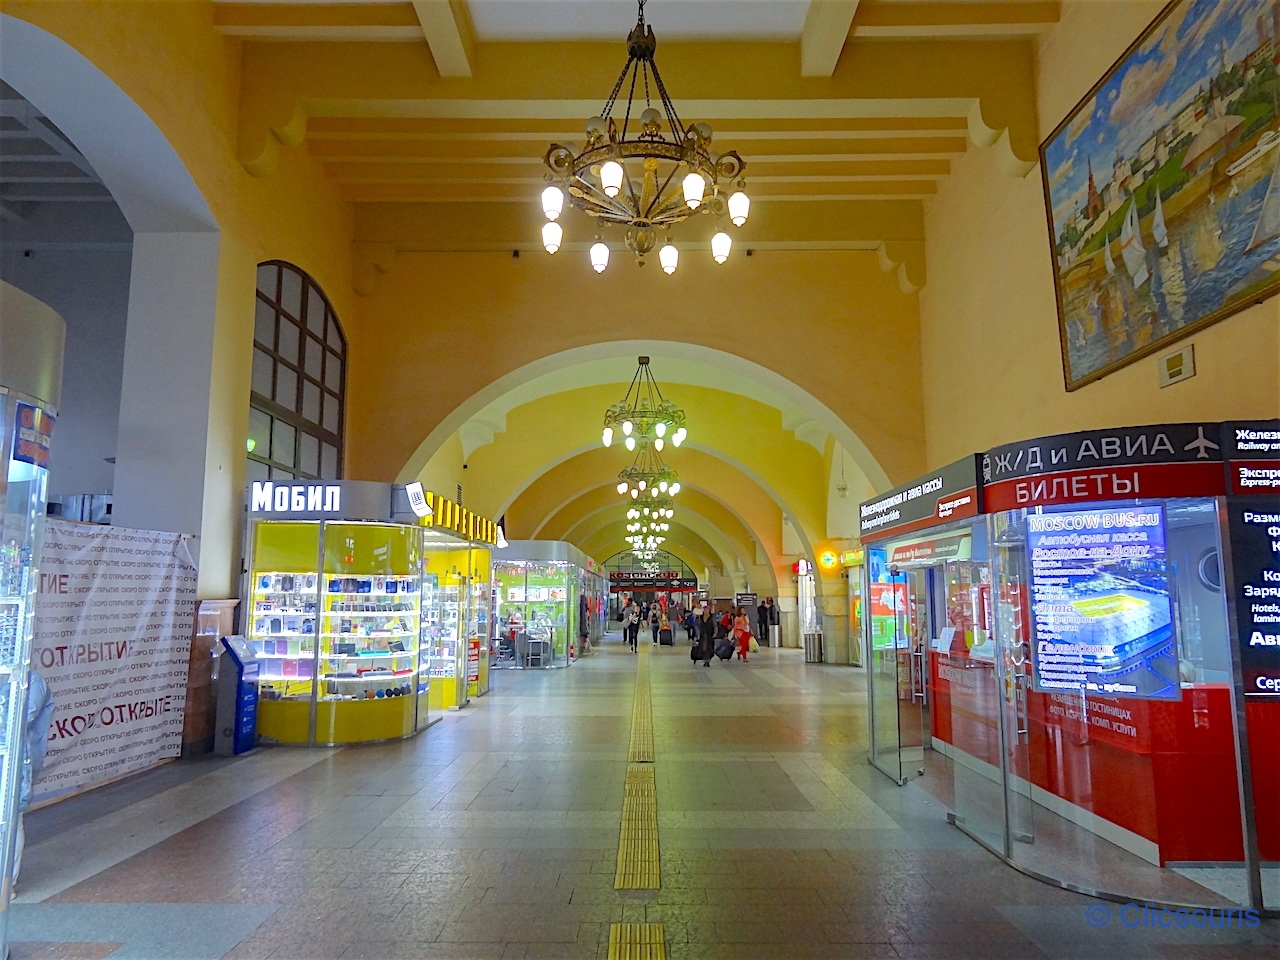 Moscou gare de Kazan